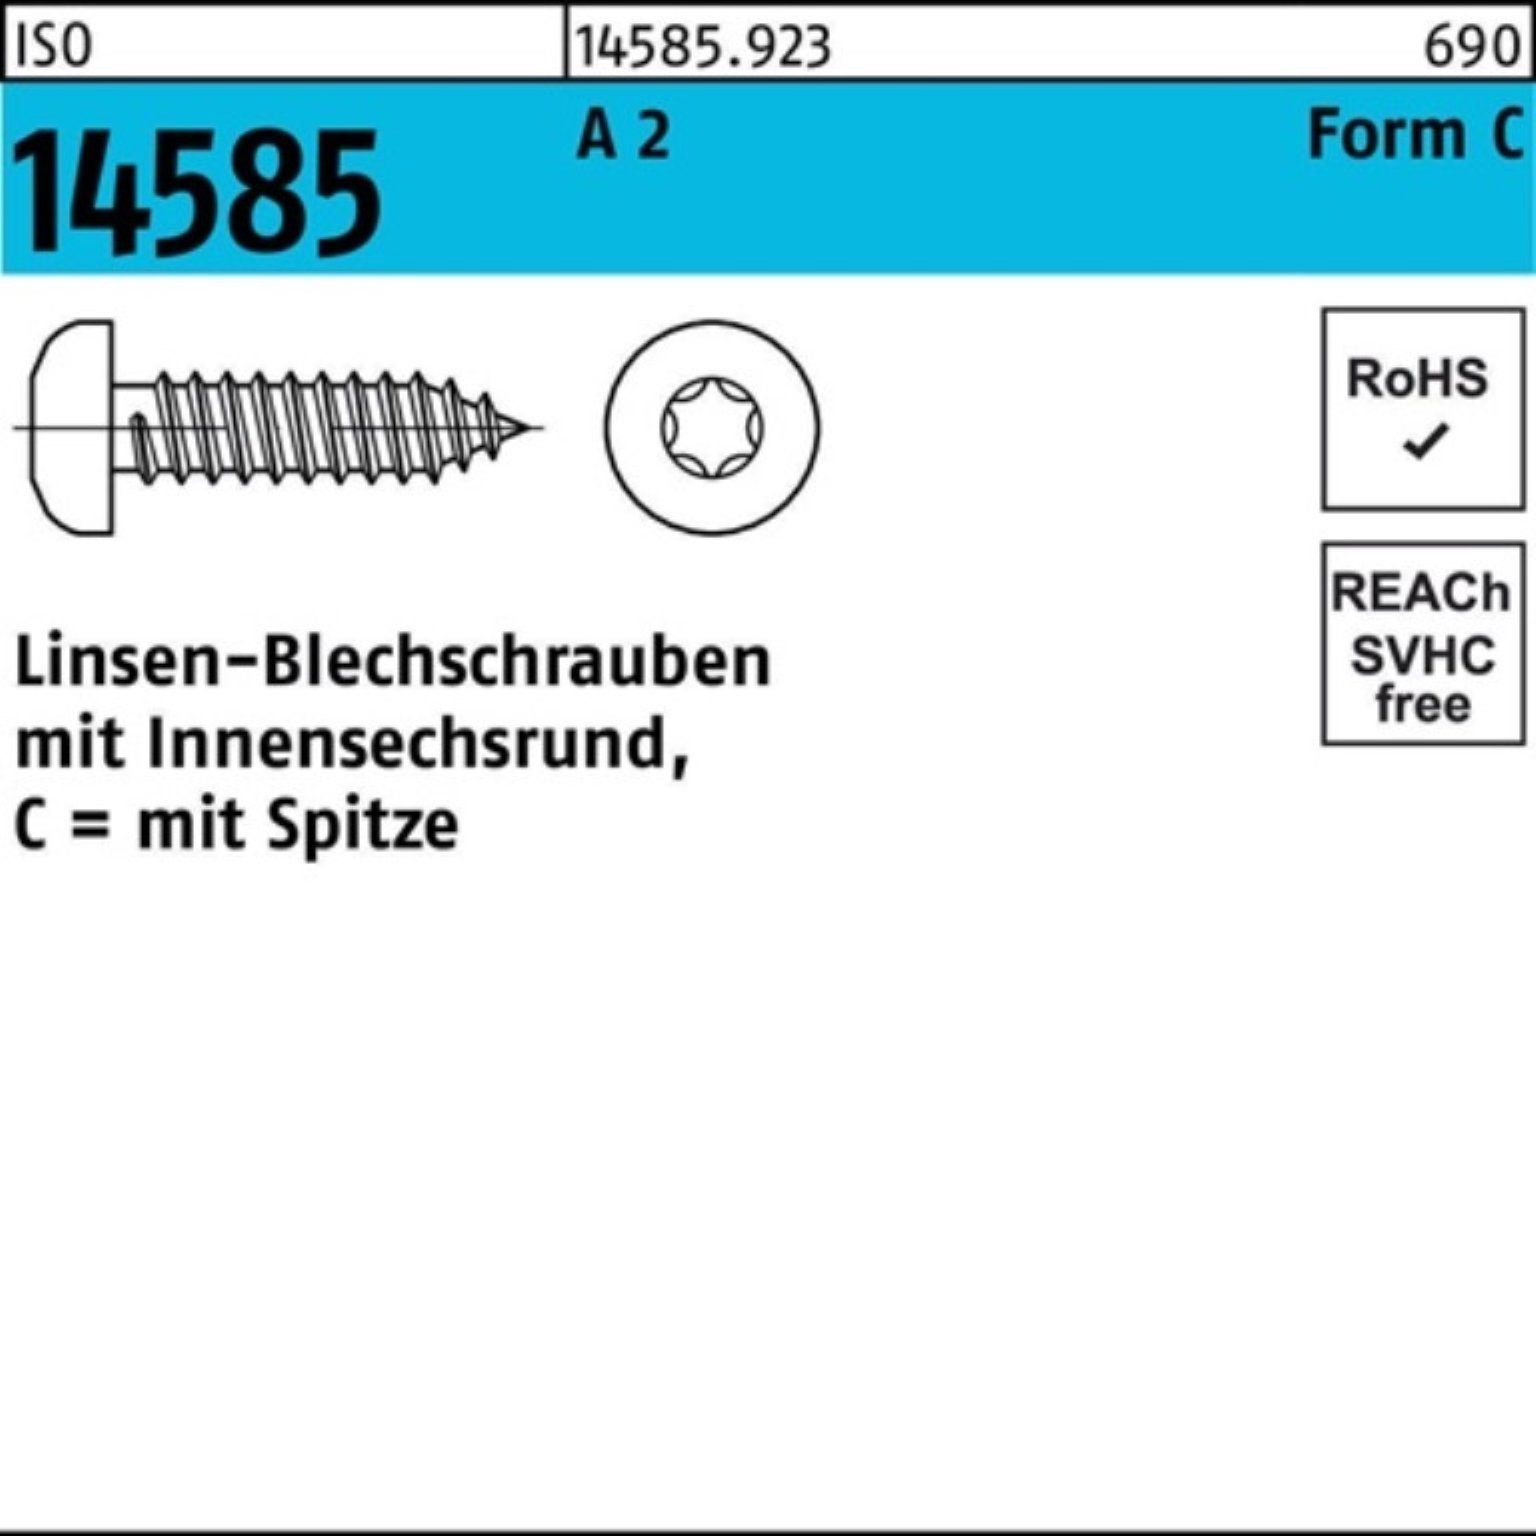 Reyher Blechschraube 250er St ISR 5,5x Linsenblechschraube 45 14585 ISO Pack 250 2 A -C T25